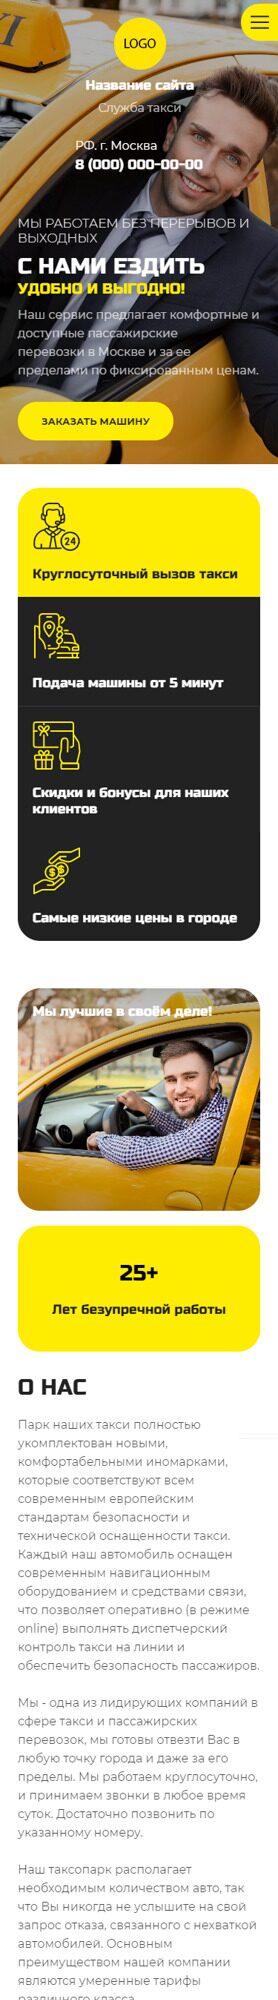 Готовый Сайт-Бизнес № 4432290 - Услуги такси (Мобильная версия)